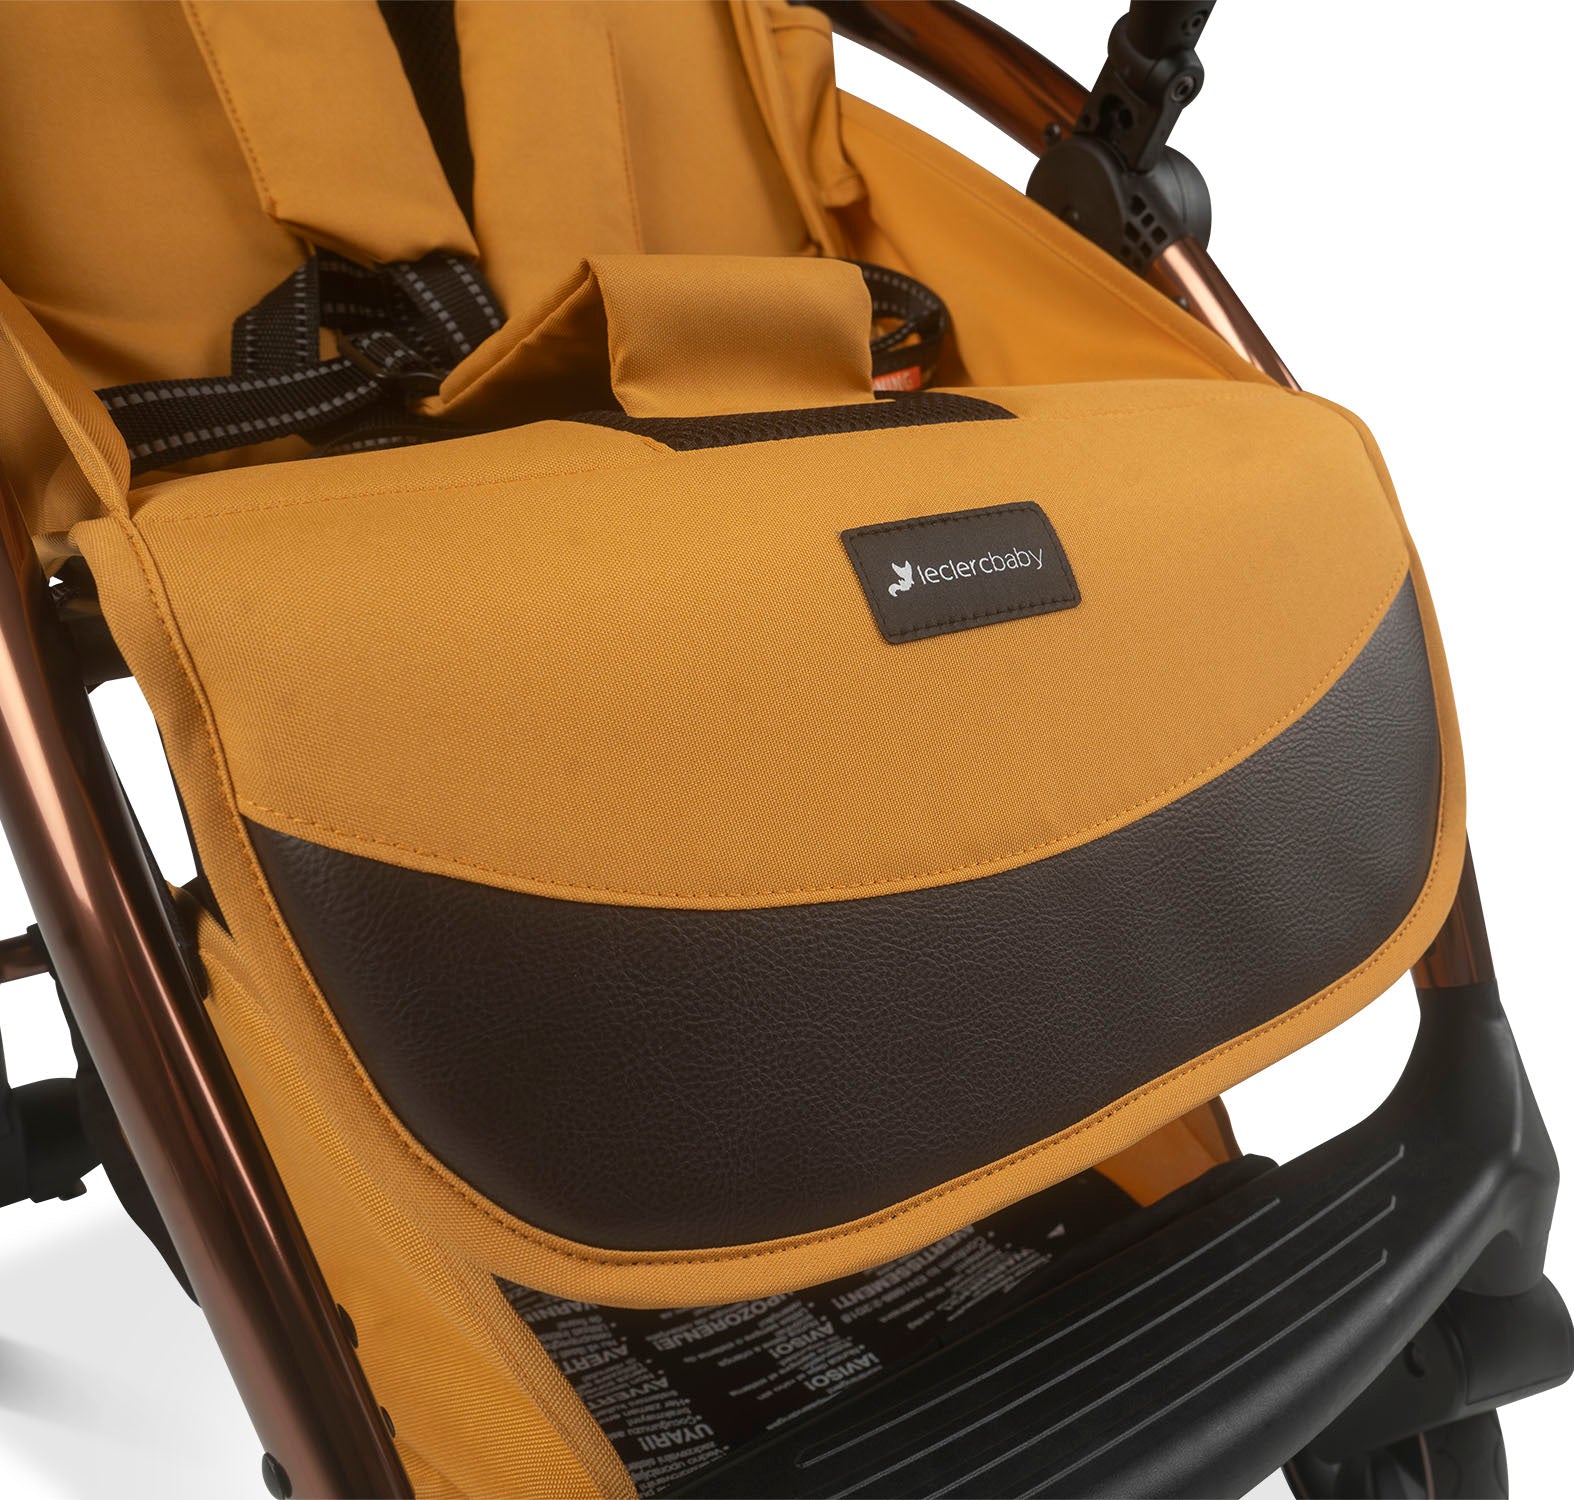 Influencer Air Twin Stroller Bundle : Golden Mustard Stroller + Cloudy Cream Stroller